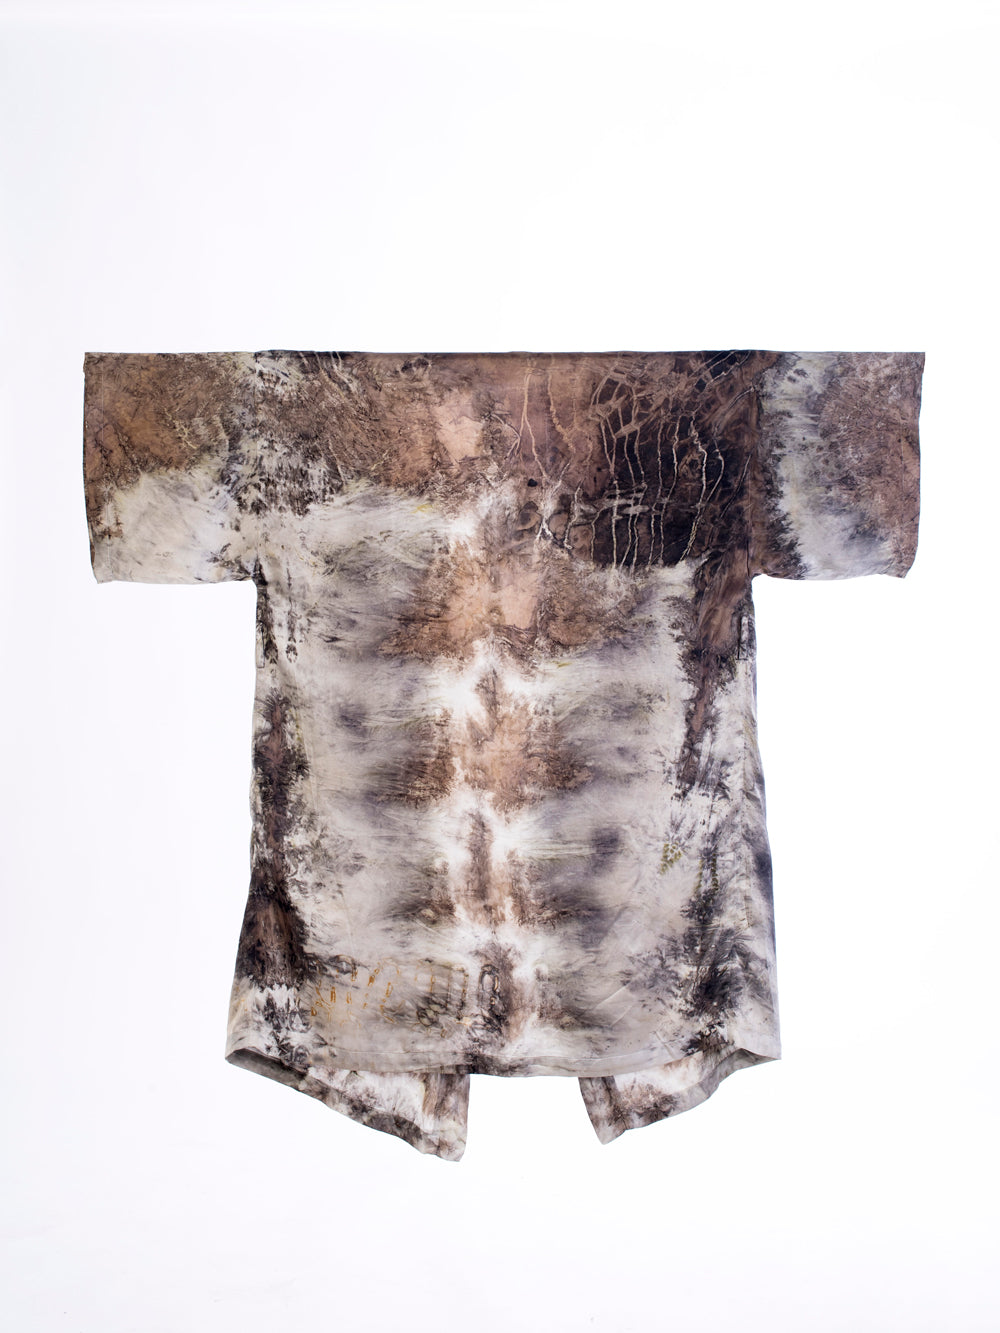 Bush Dyed Silk Robe by Bernadette Watt